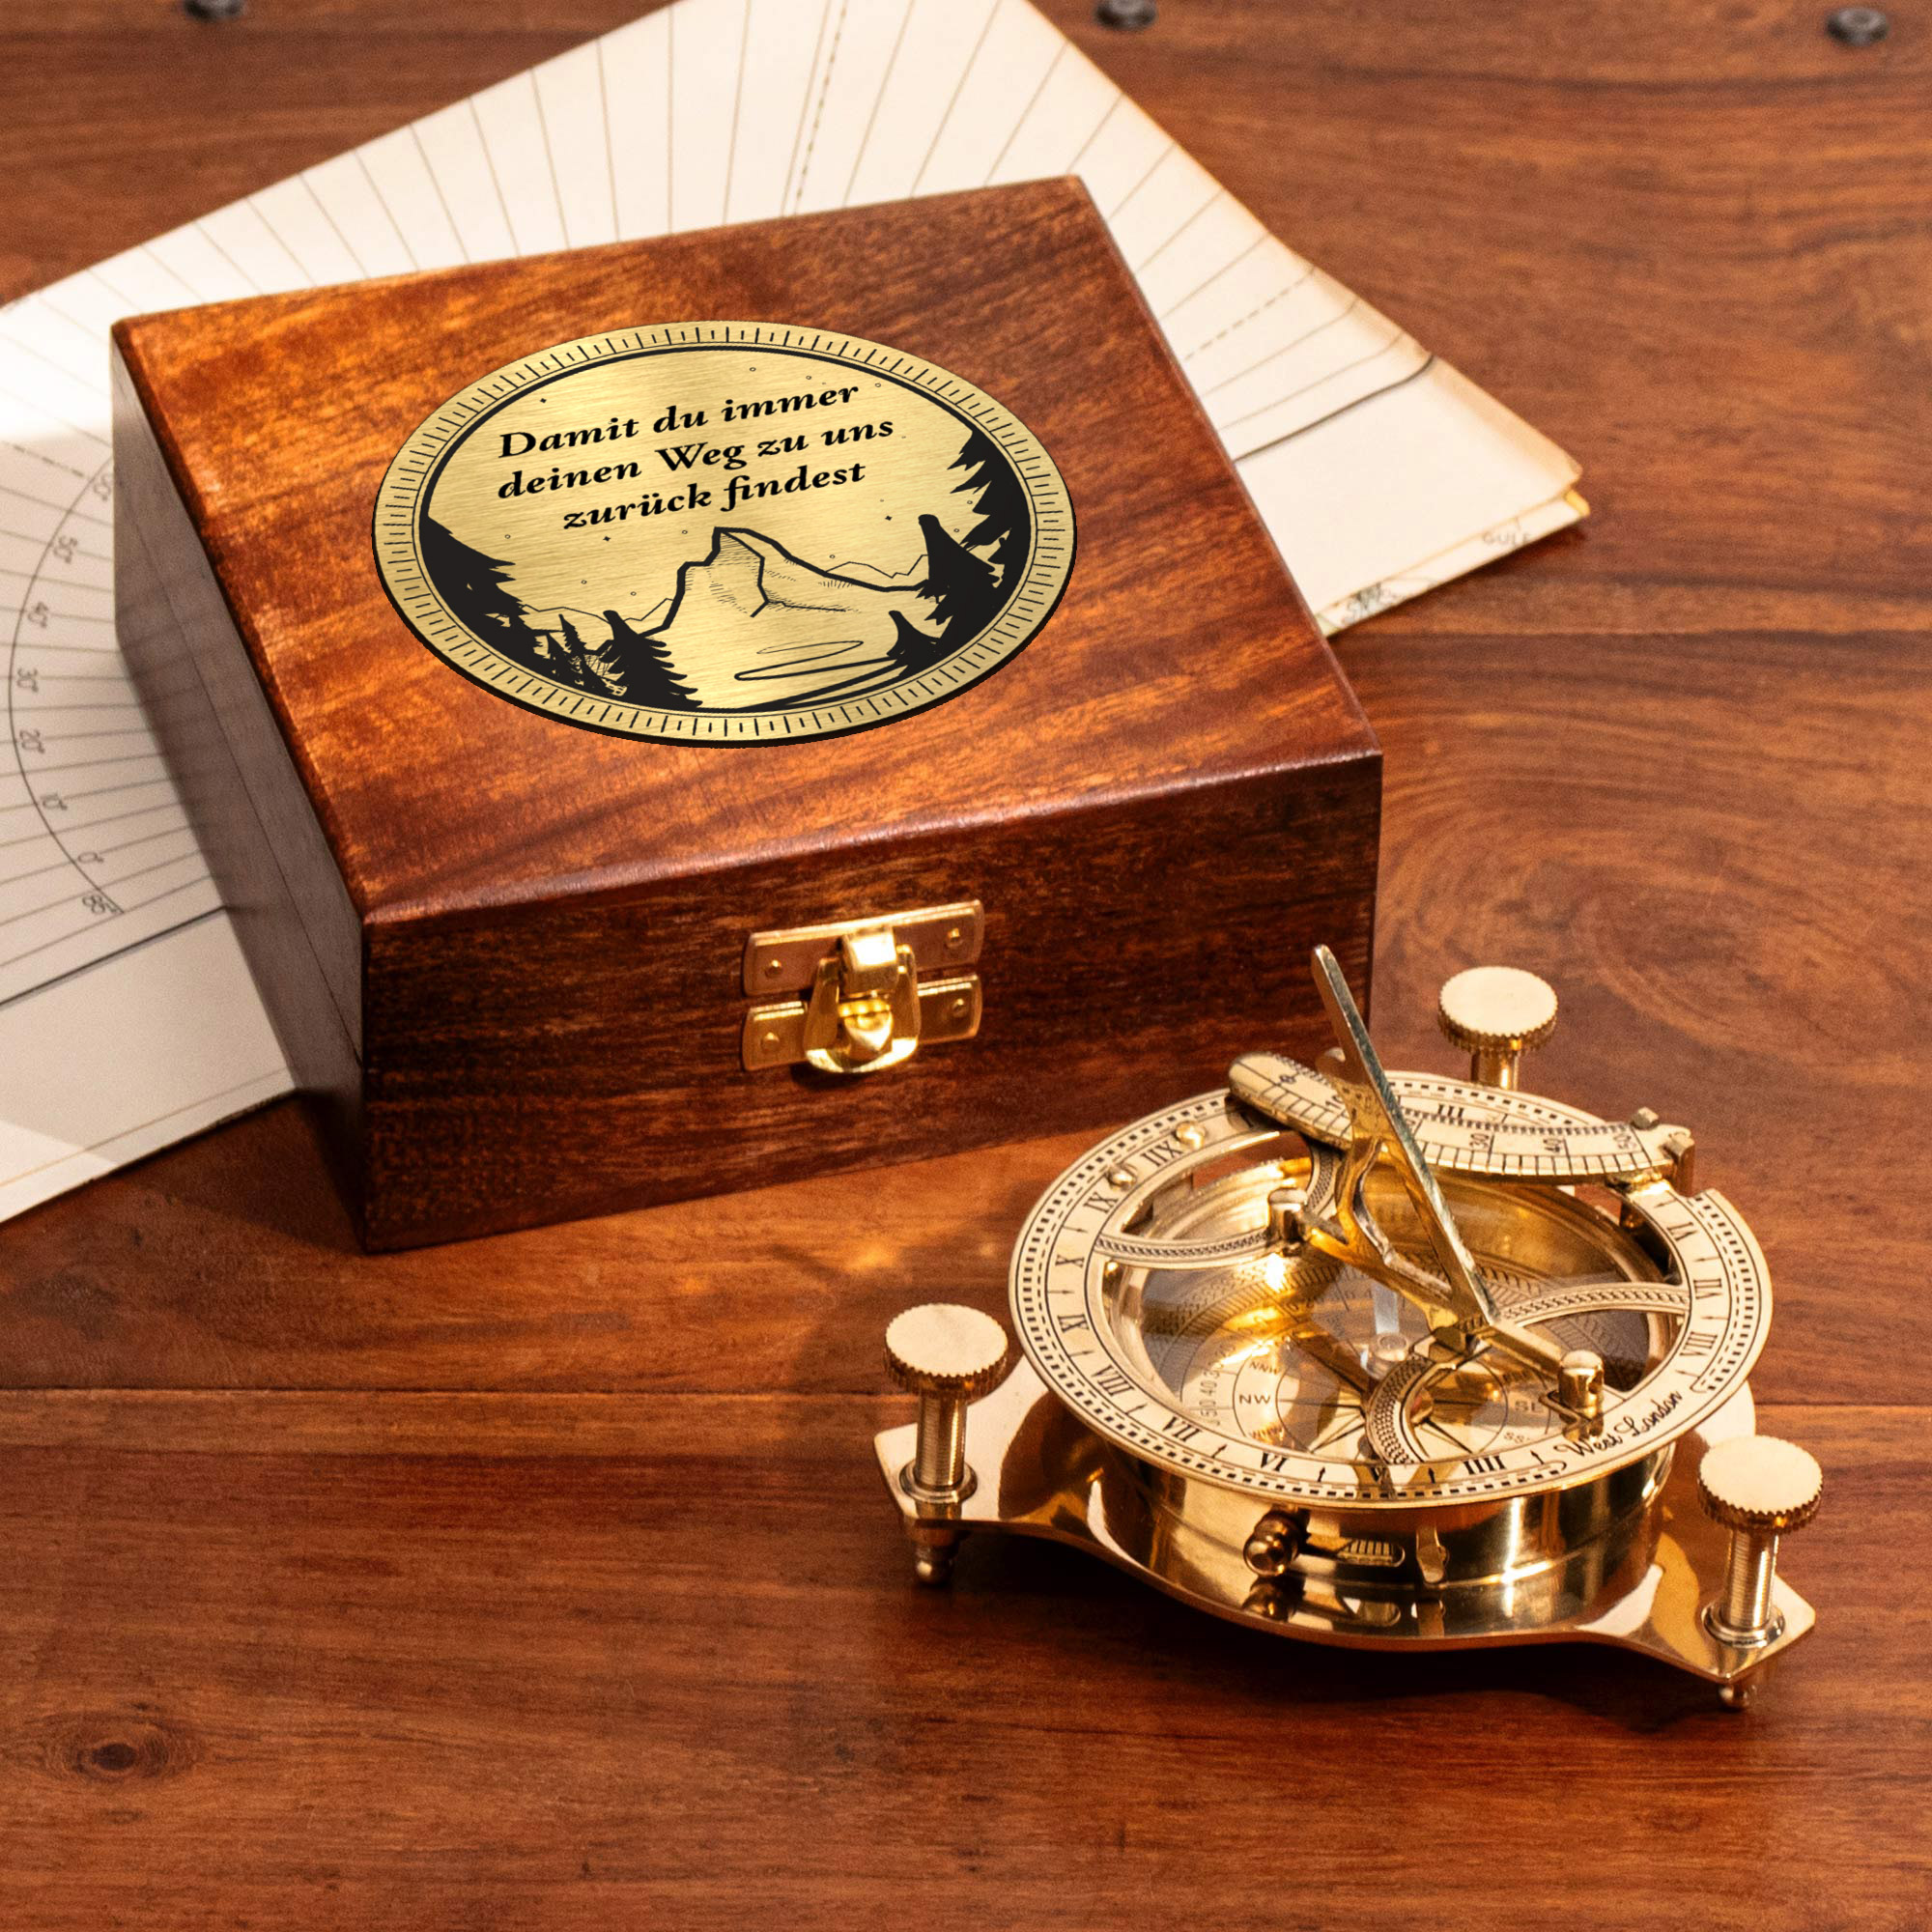 Kompass Sonnenuhr in Holzbox mit Gravur